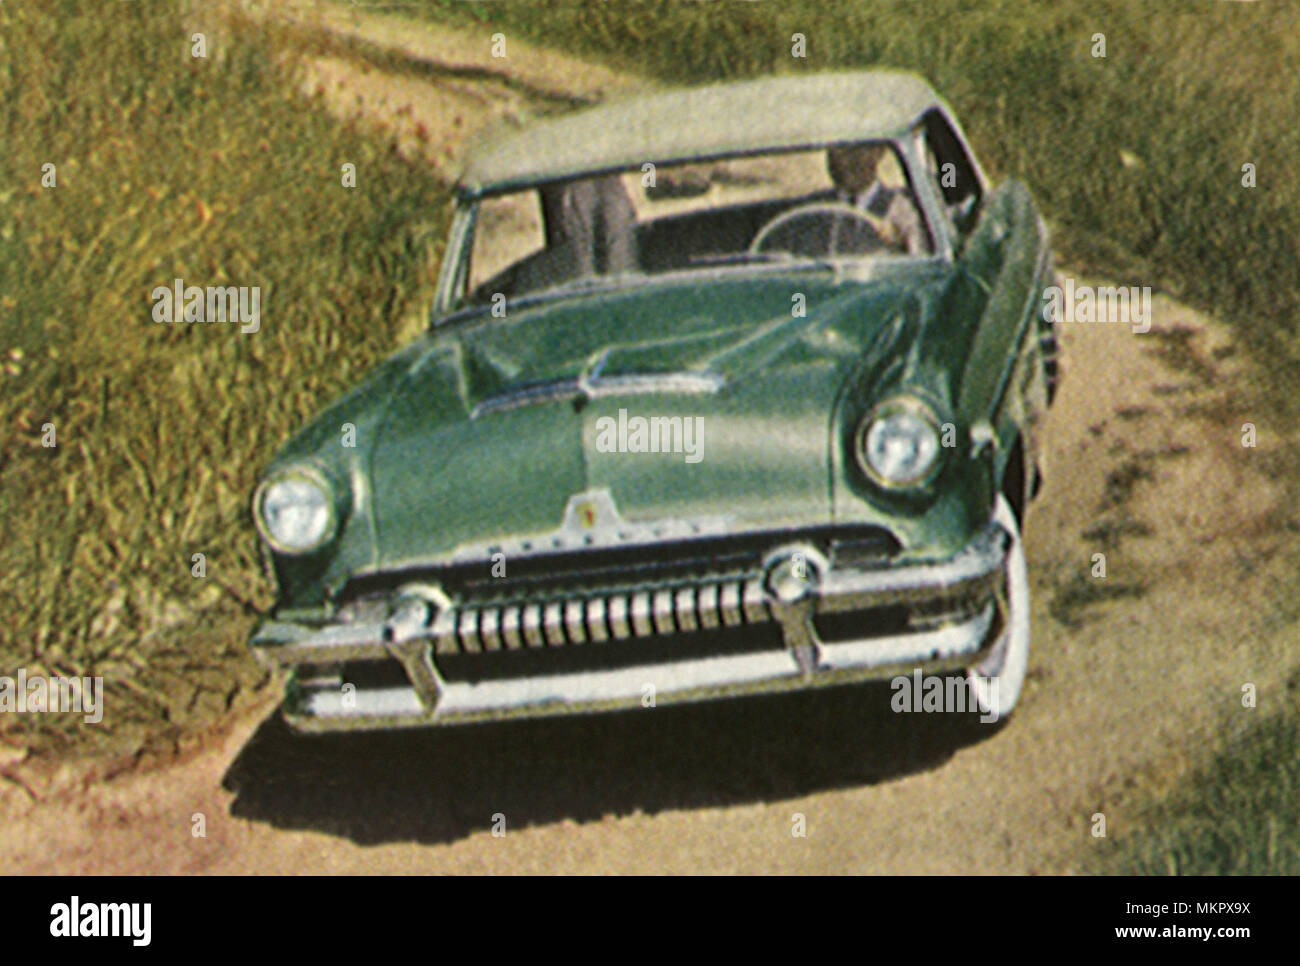 1954 Mercury Stock Photo